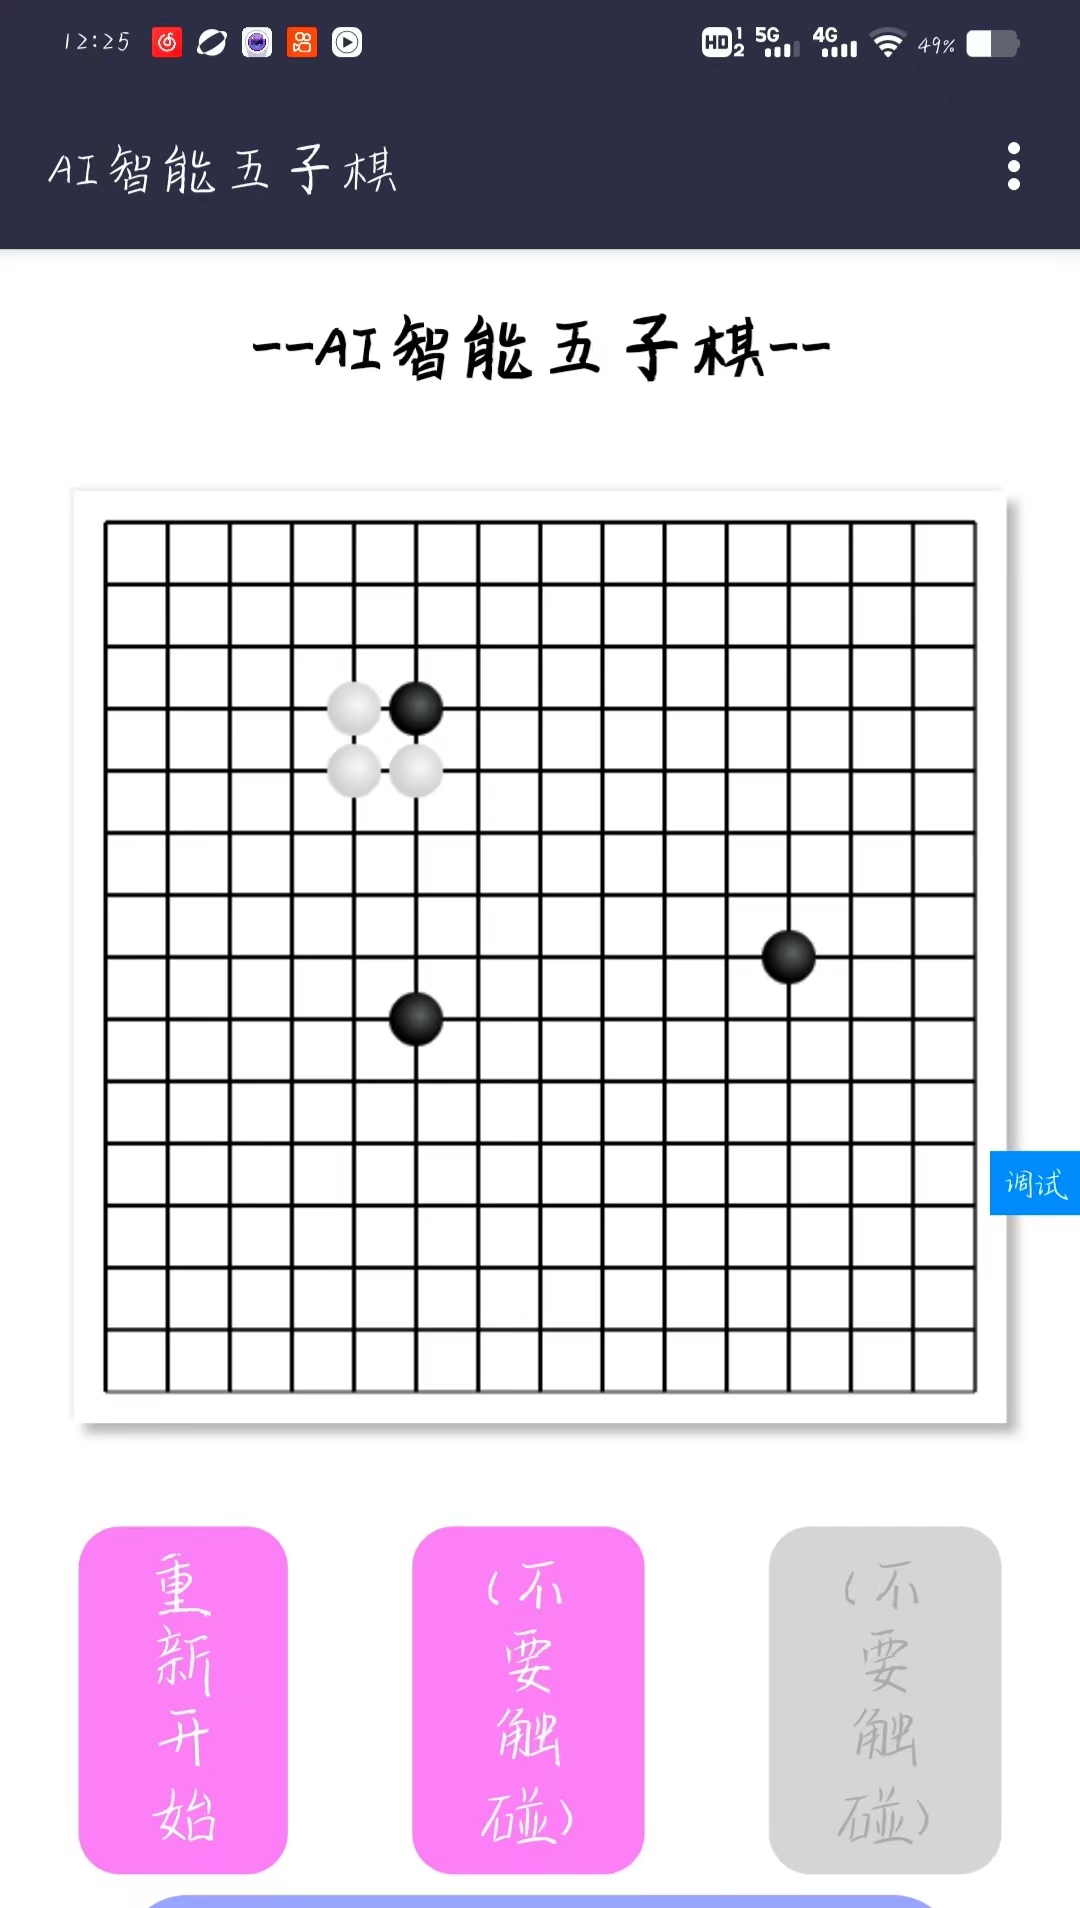 智能五子棋AI概念版好玩吗 智能五子棋AI概念版玩法简介